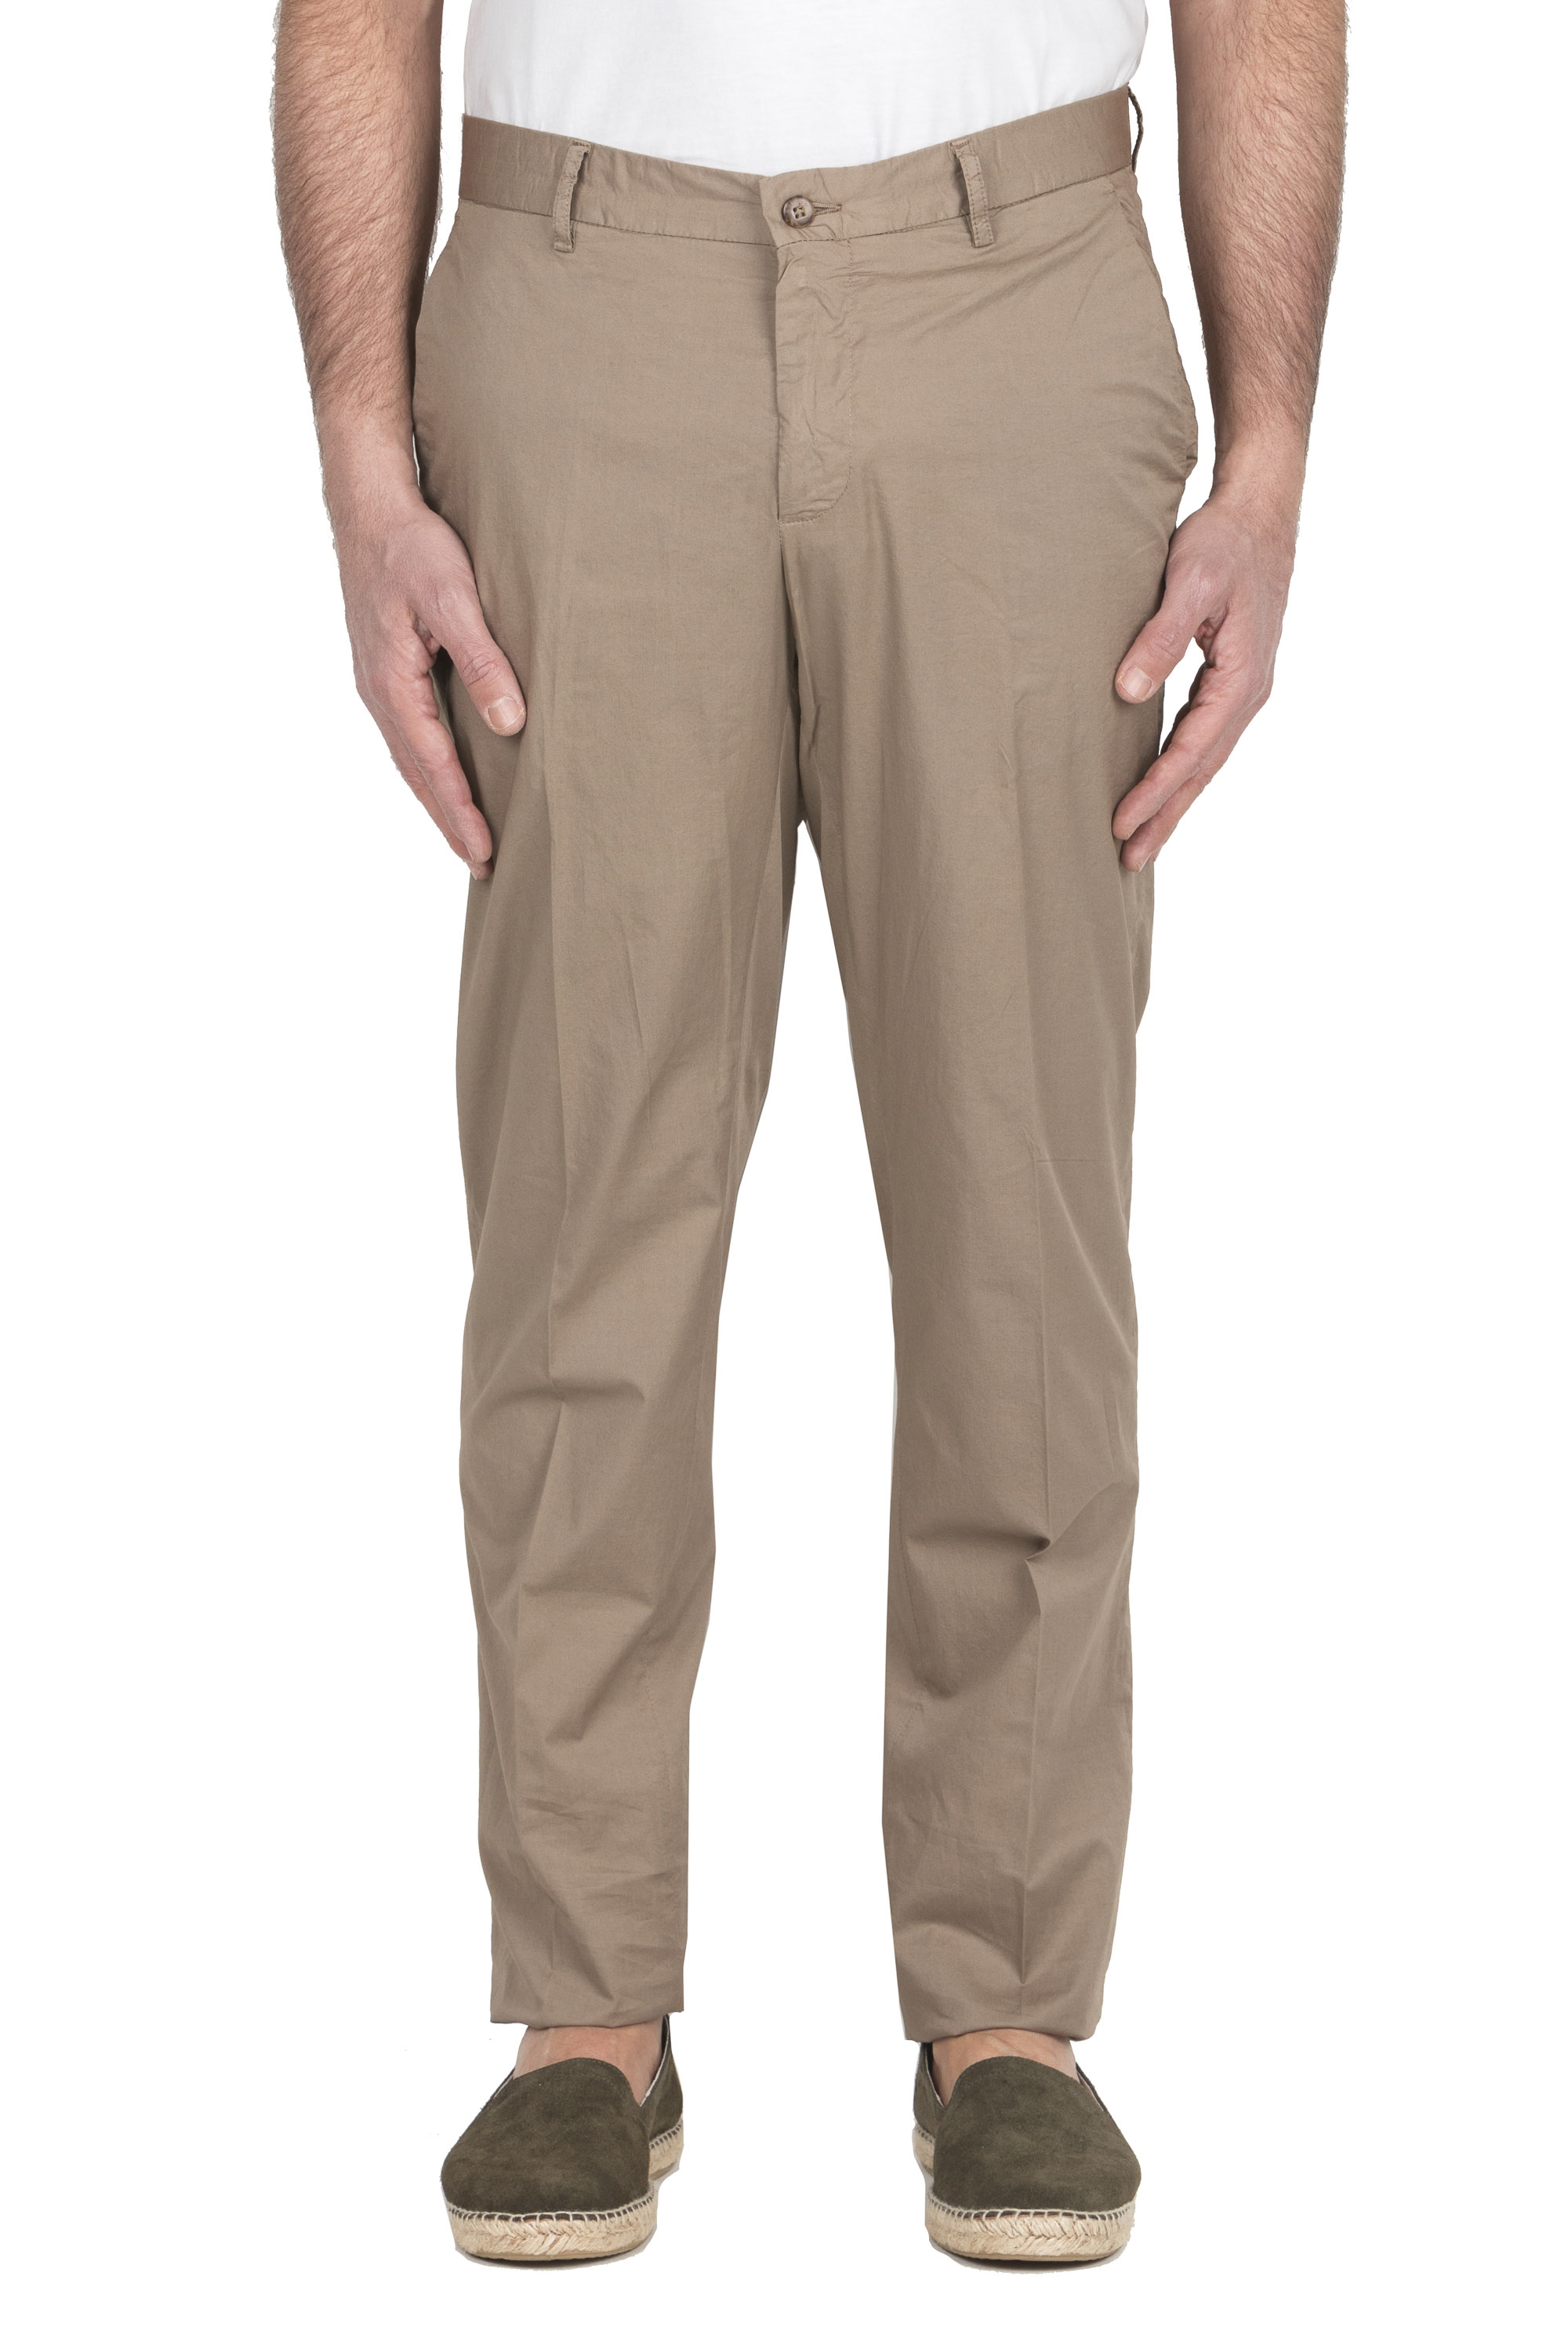 SBU 04970_24SS Pantaloni chino in cotone stretch super leggero beige 01